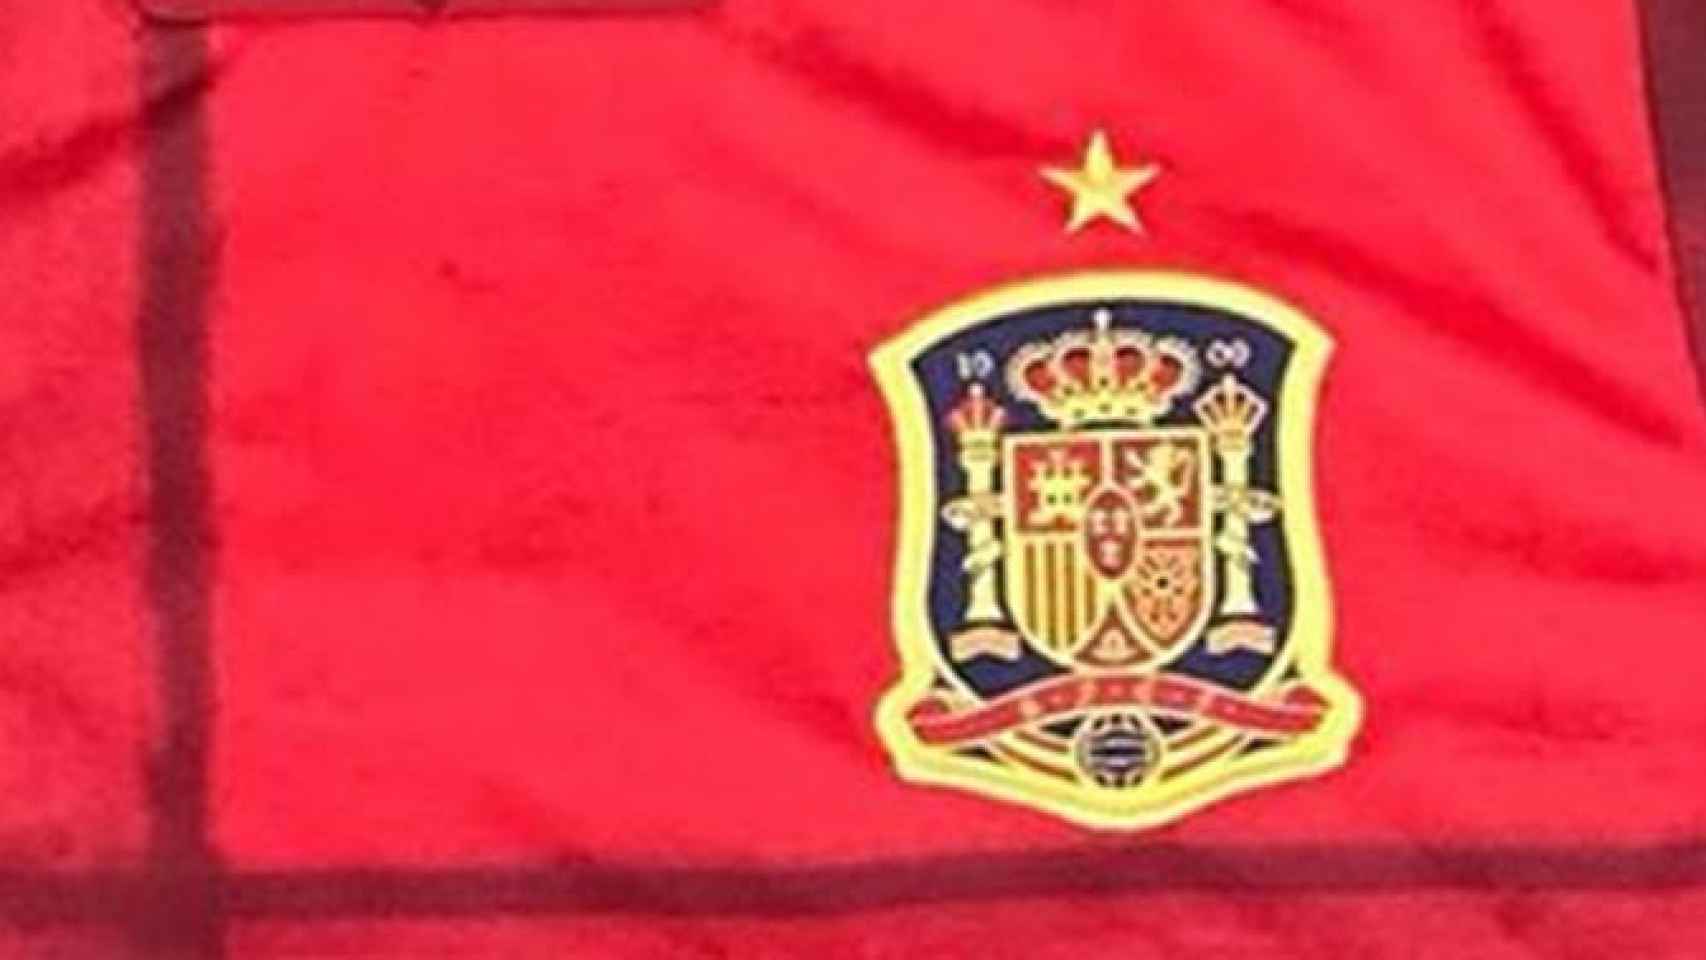 Se filtra la nueva camiseta de la selección española para la Eurocopa 2020